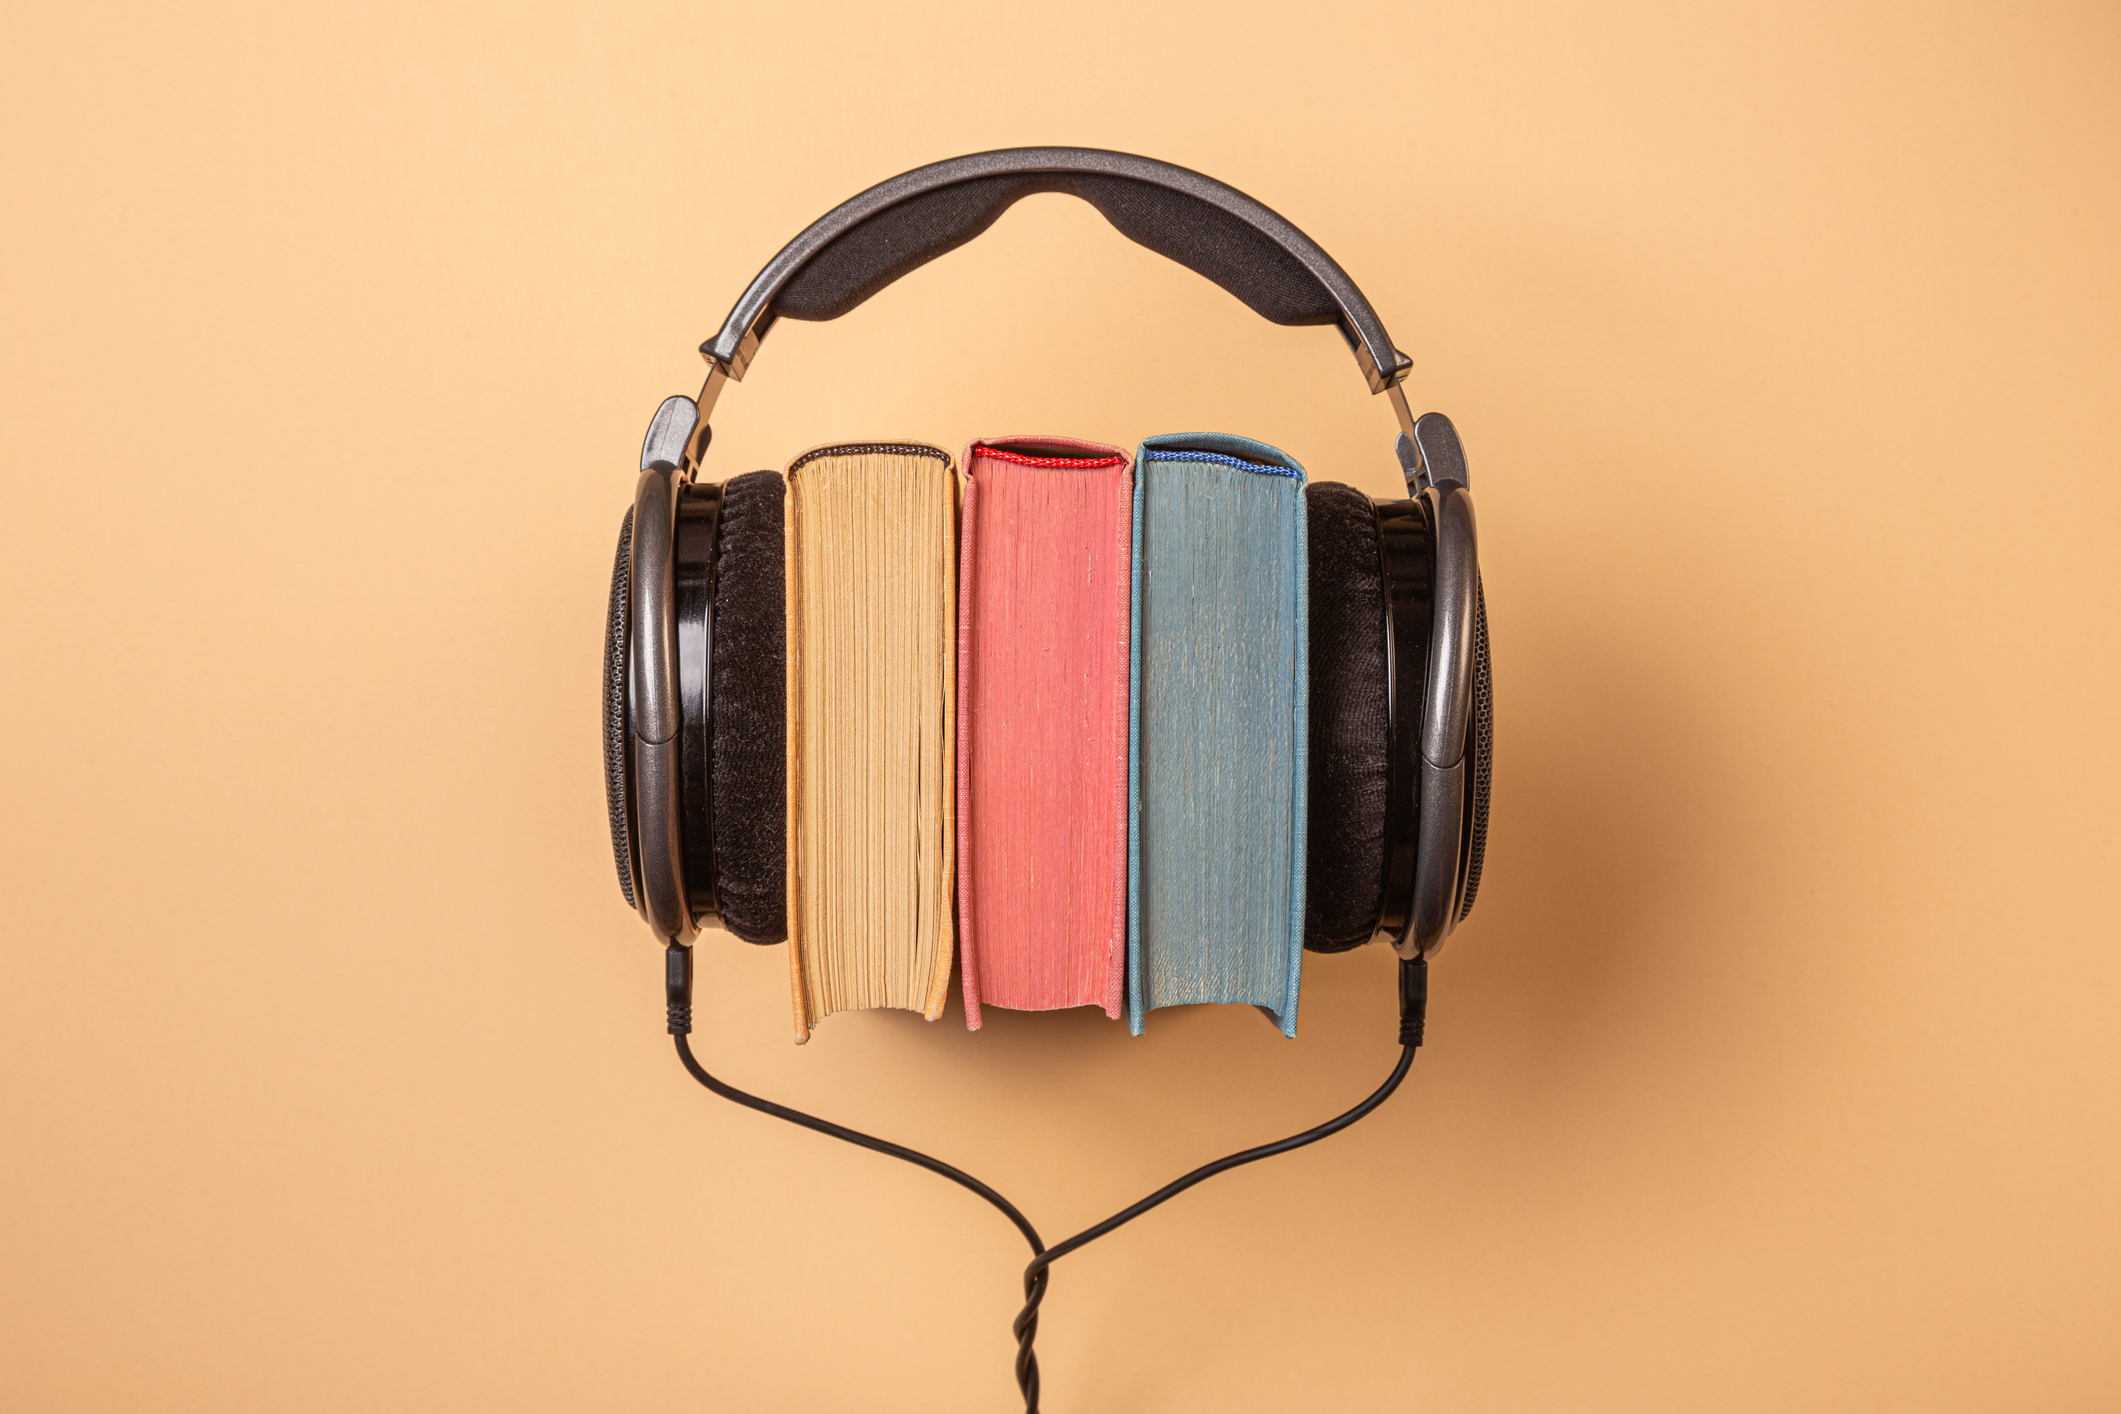 Preços baixos em Do-It-Yourself audiobooks e Audio Toca em Chinês